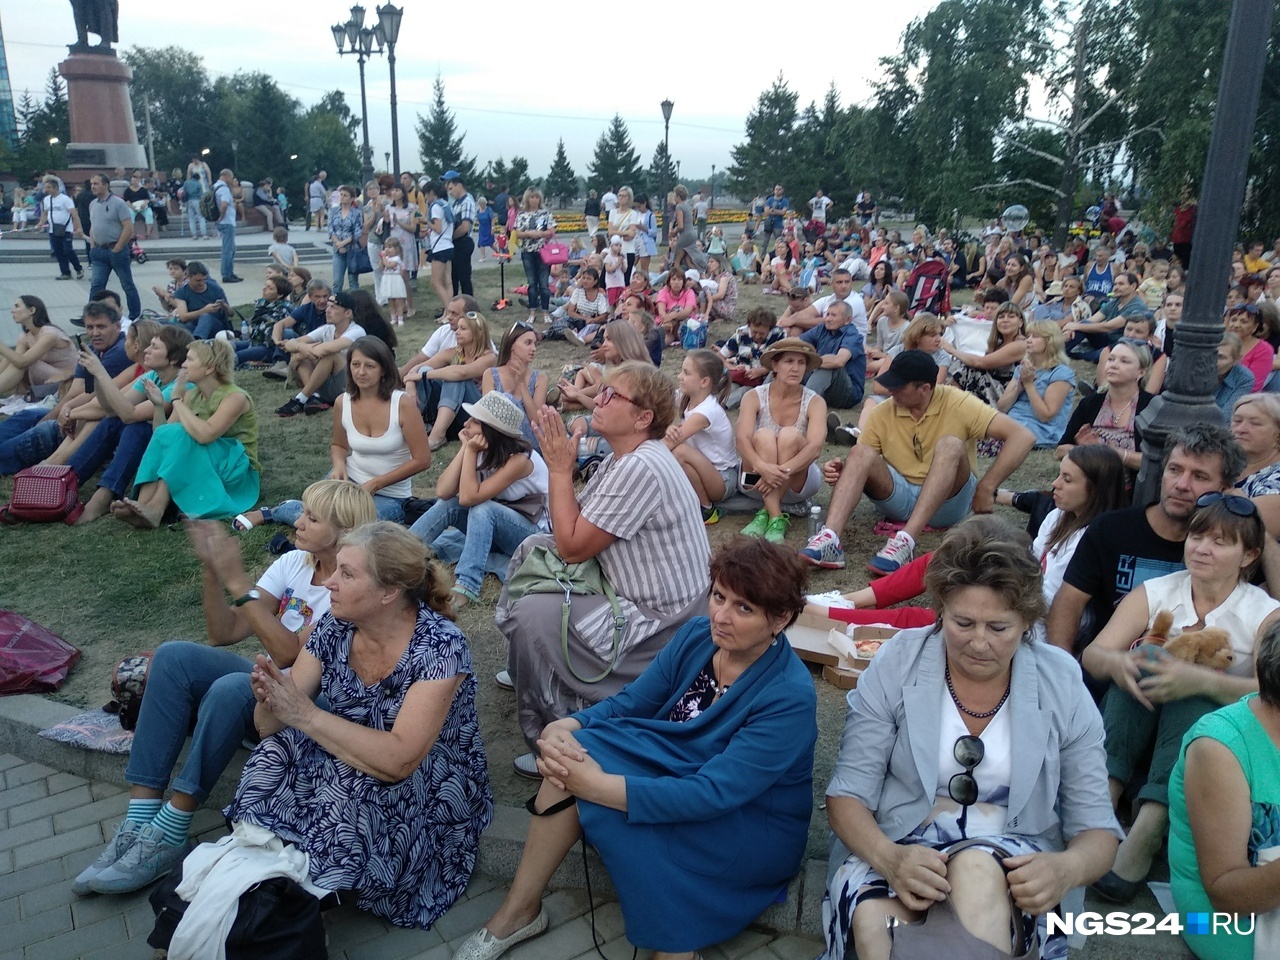 Многие решили смотреть концерт с экранов, расположившись на газончиках возле БКЗ 